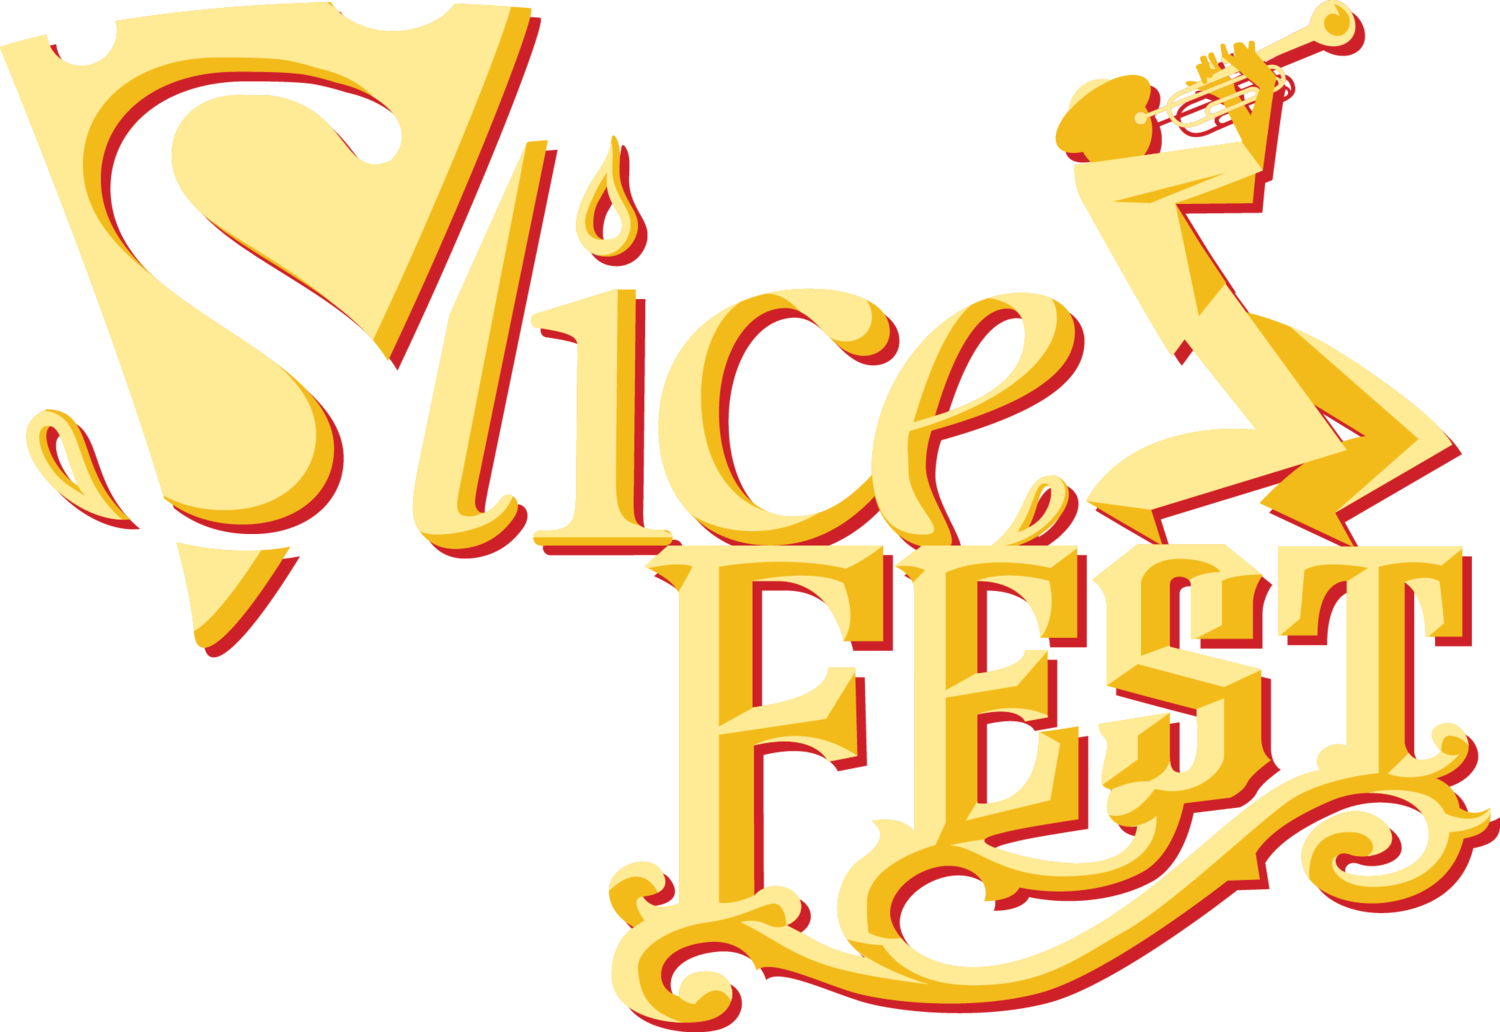 SliceFest